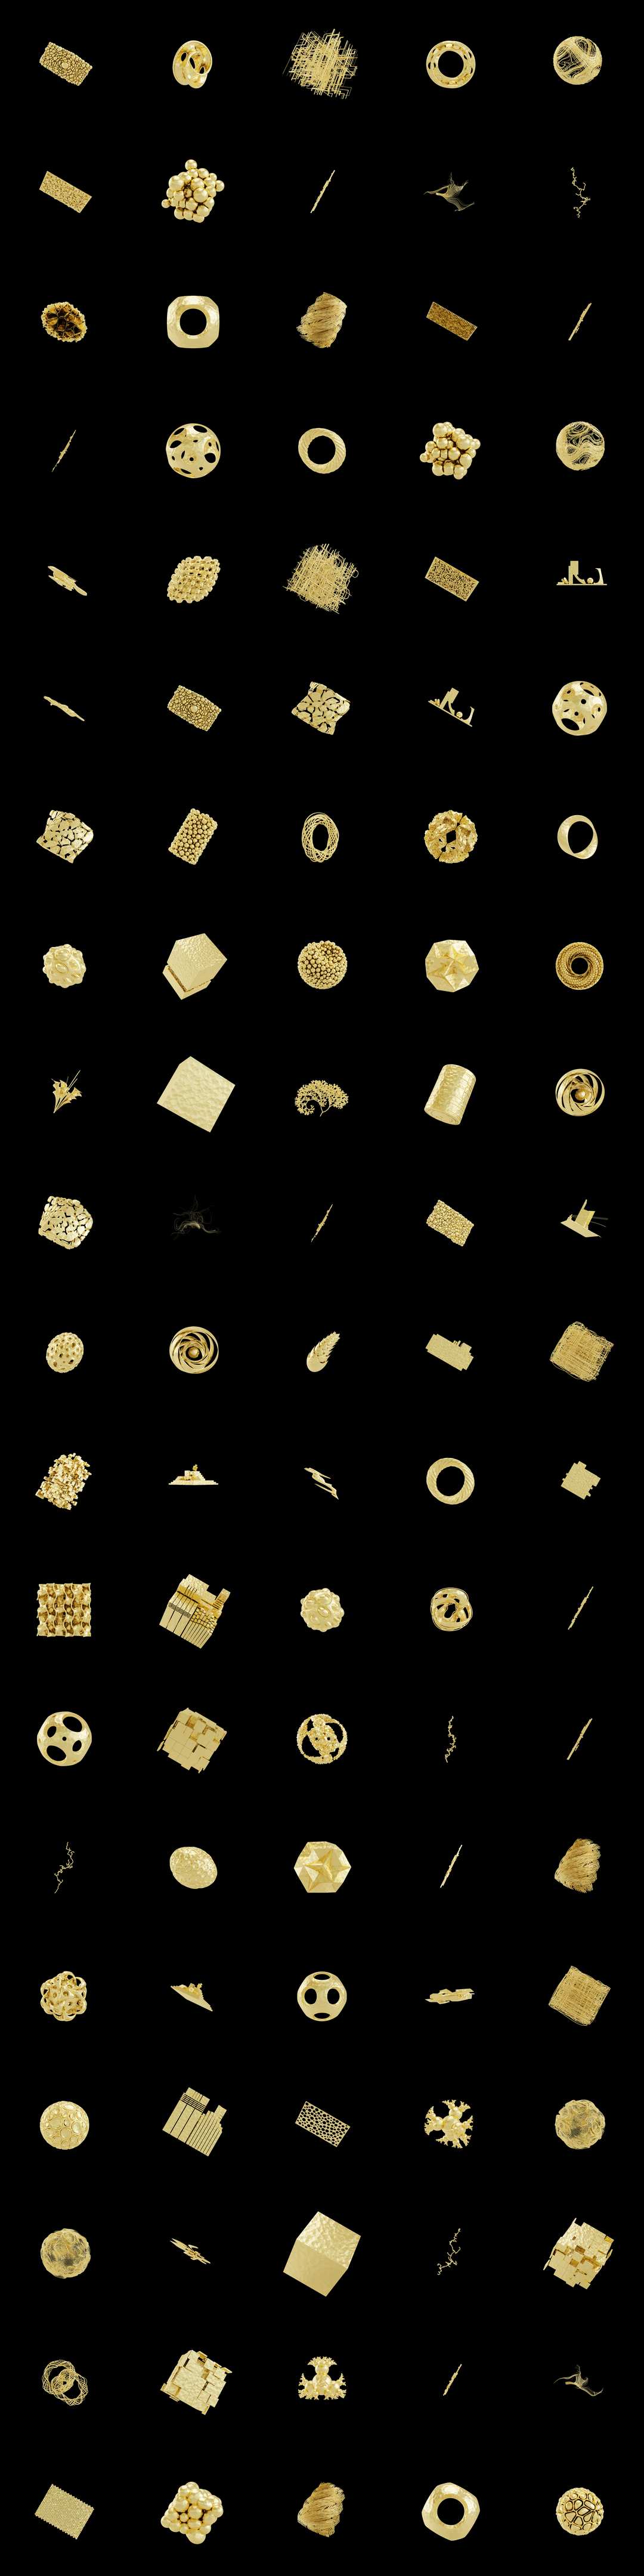 The Bundle - cmp.gold-foil/99 tile image 2